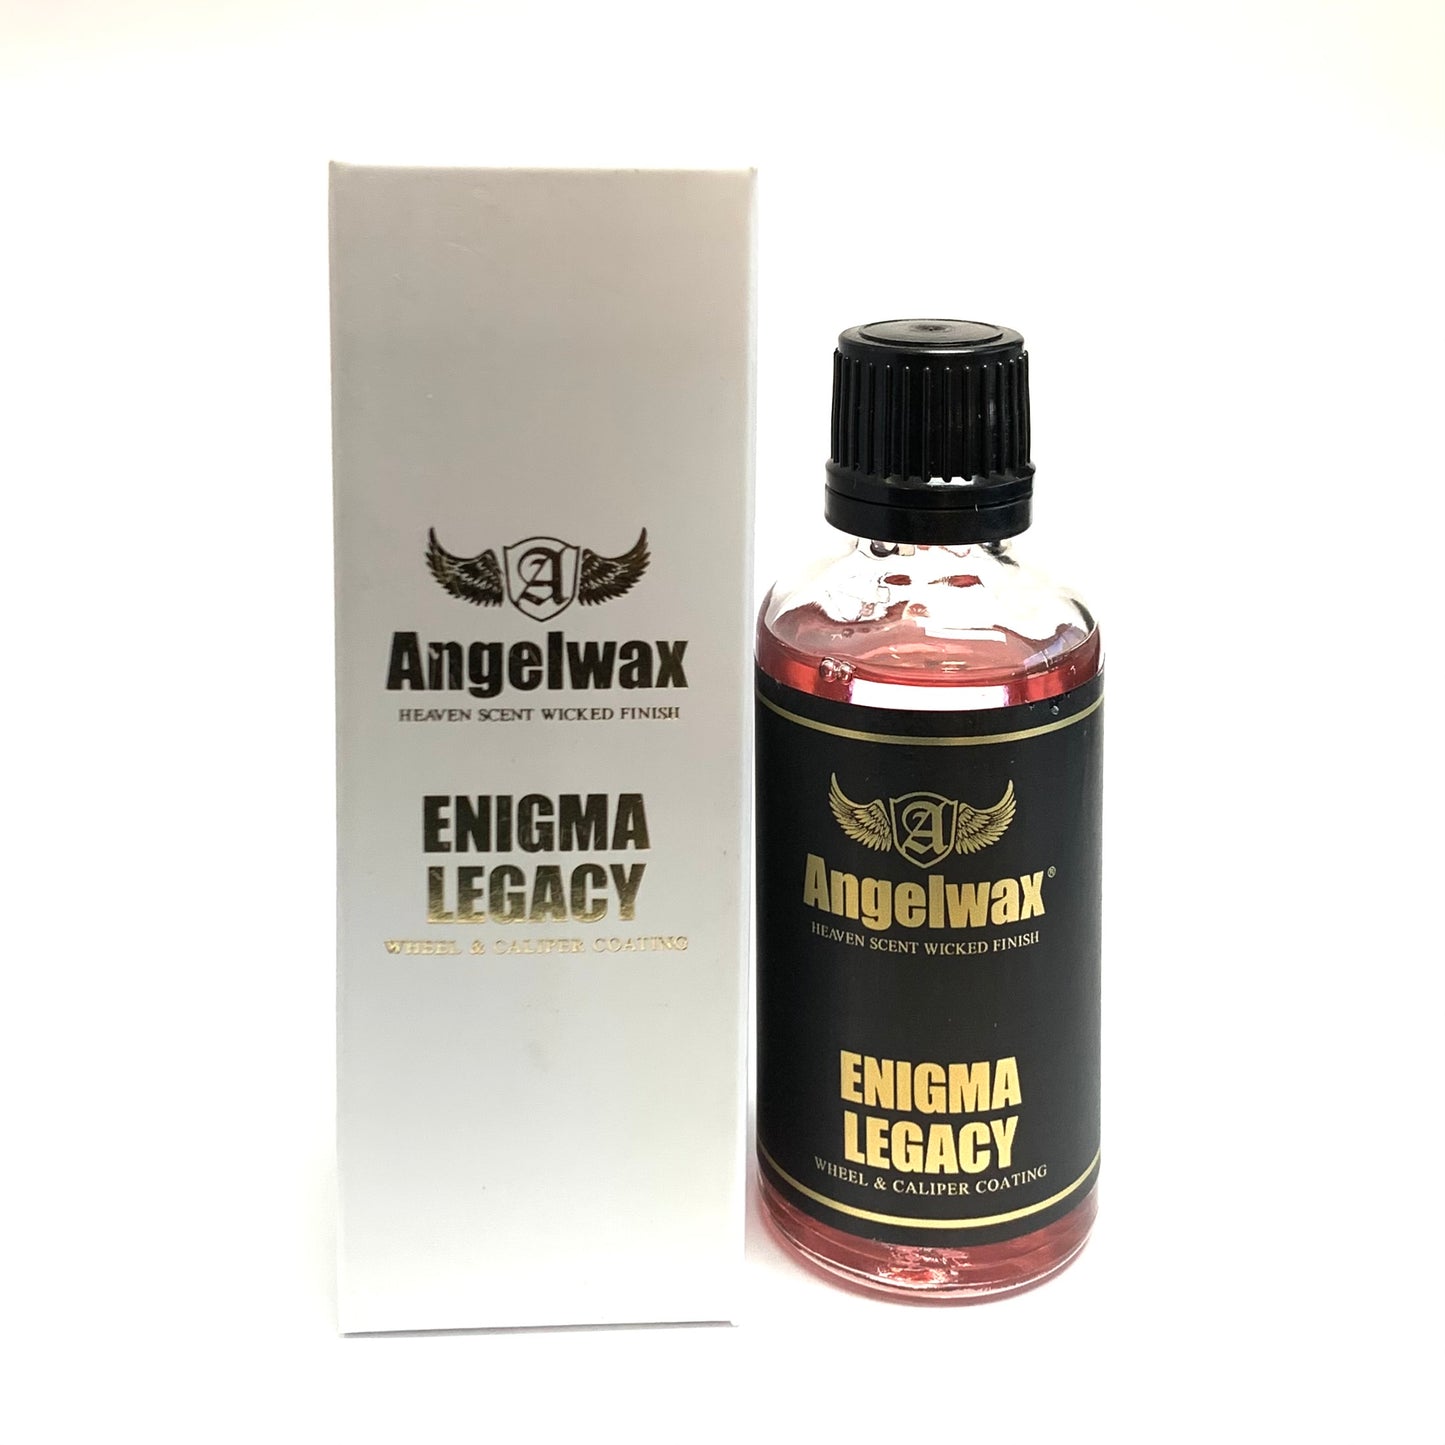 Angwelwax Enigma Legacy Wheel & Caliper Coating